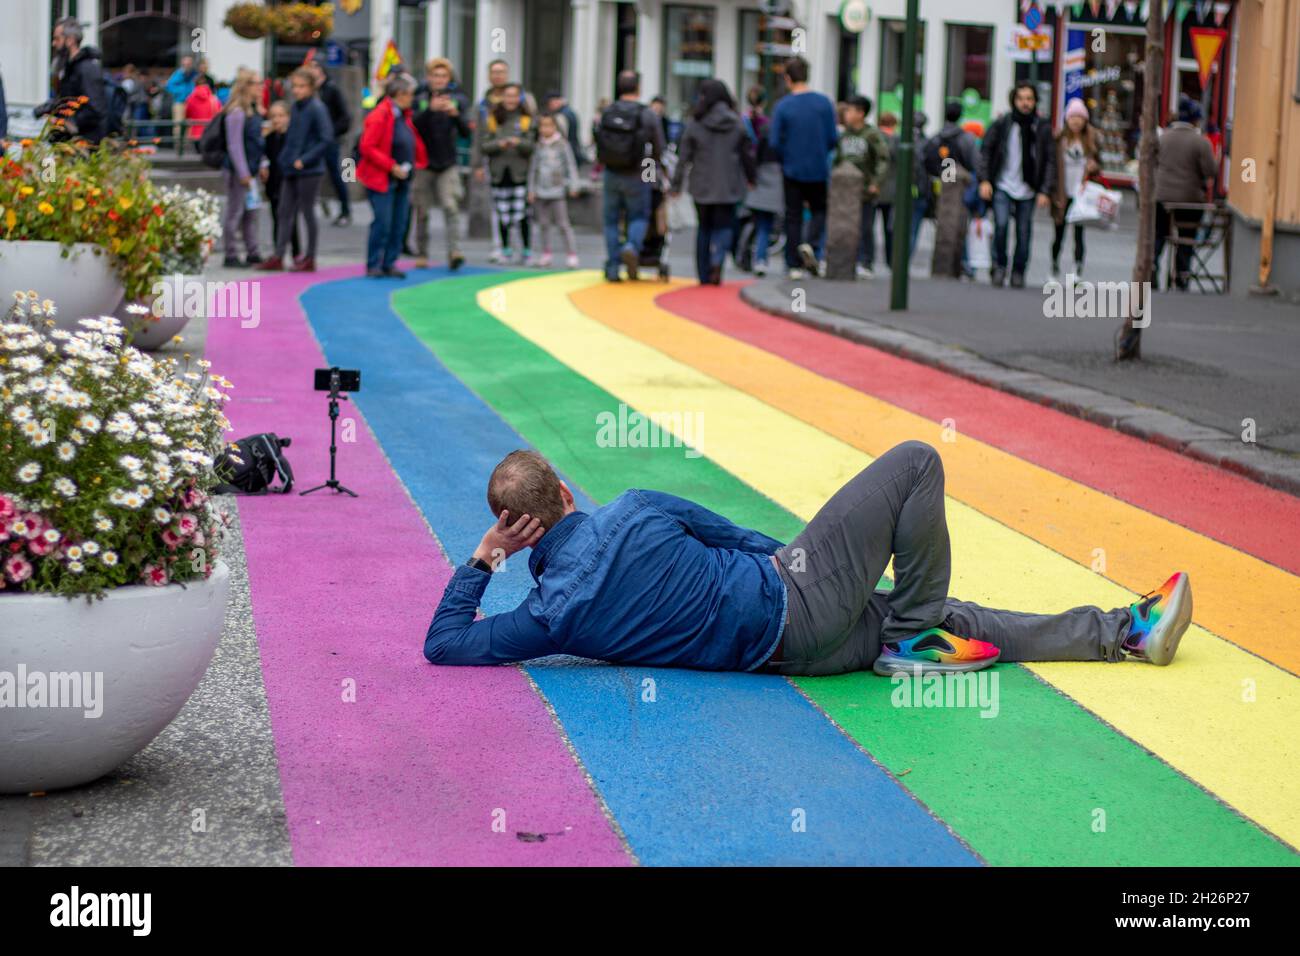 Gay pride Iceland, Skólavörðustígur in Reykjavík painted with a rainbow flag Stock Photo